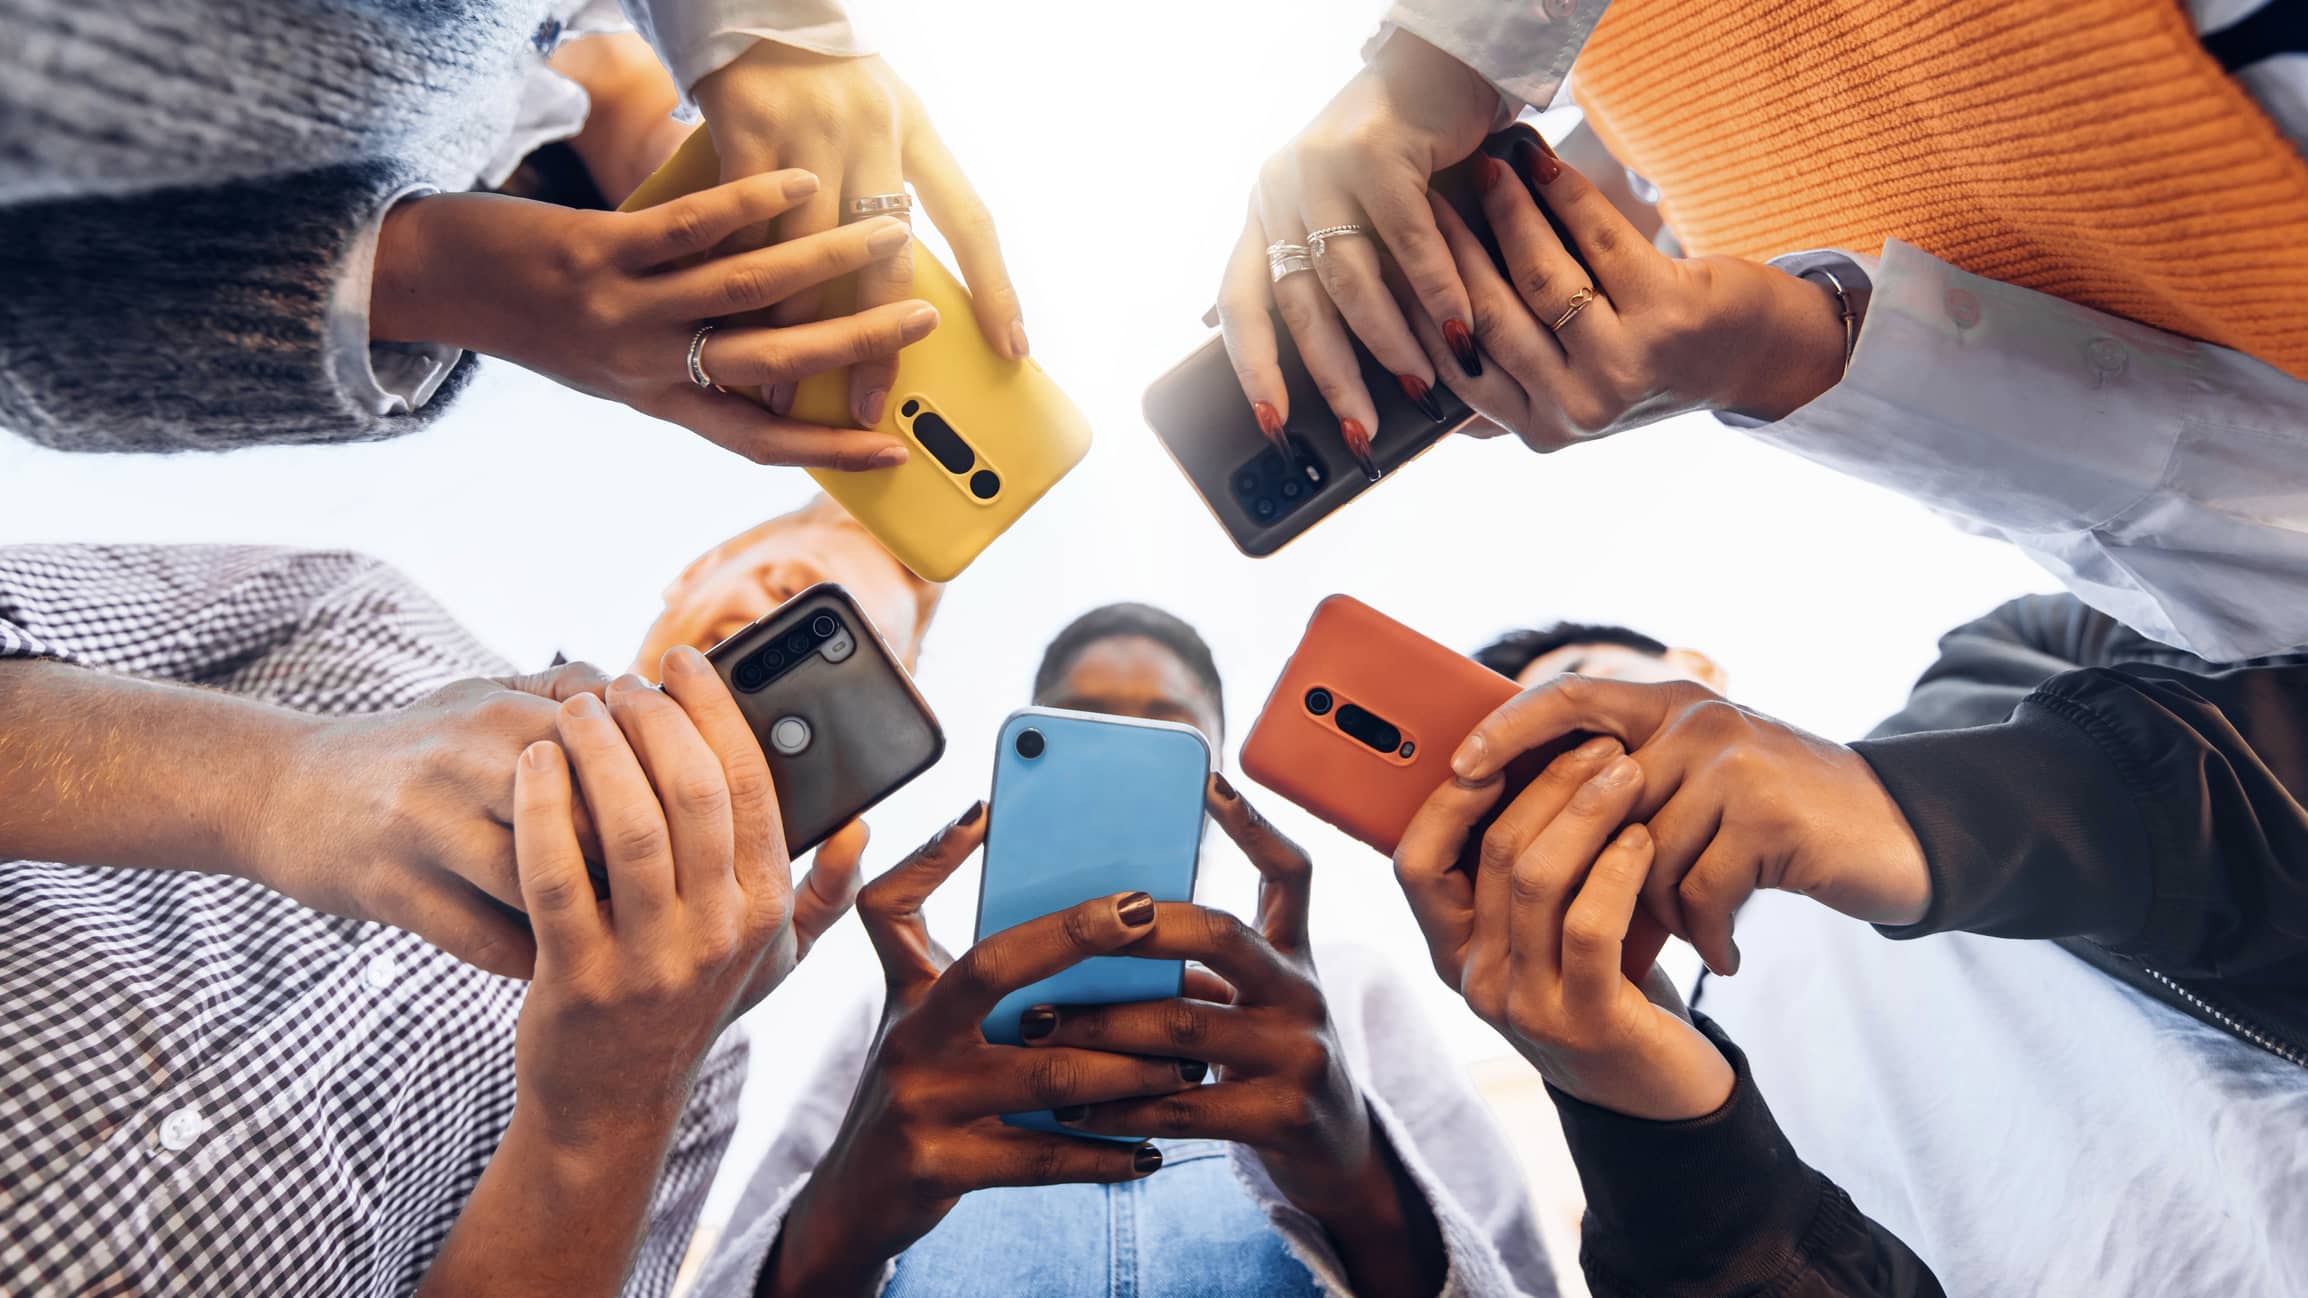 Image d'illustration représentant plusieurs personnes qui consultent leur téléphone portable.